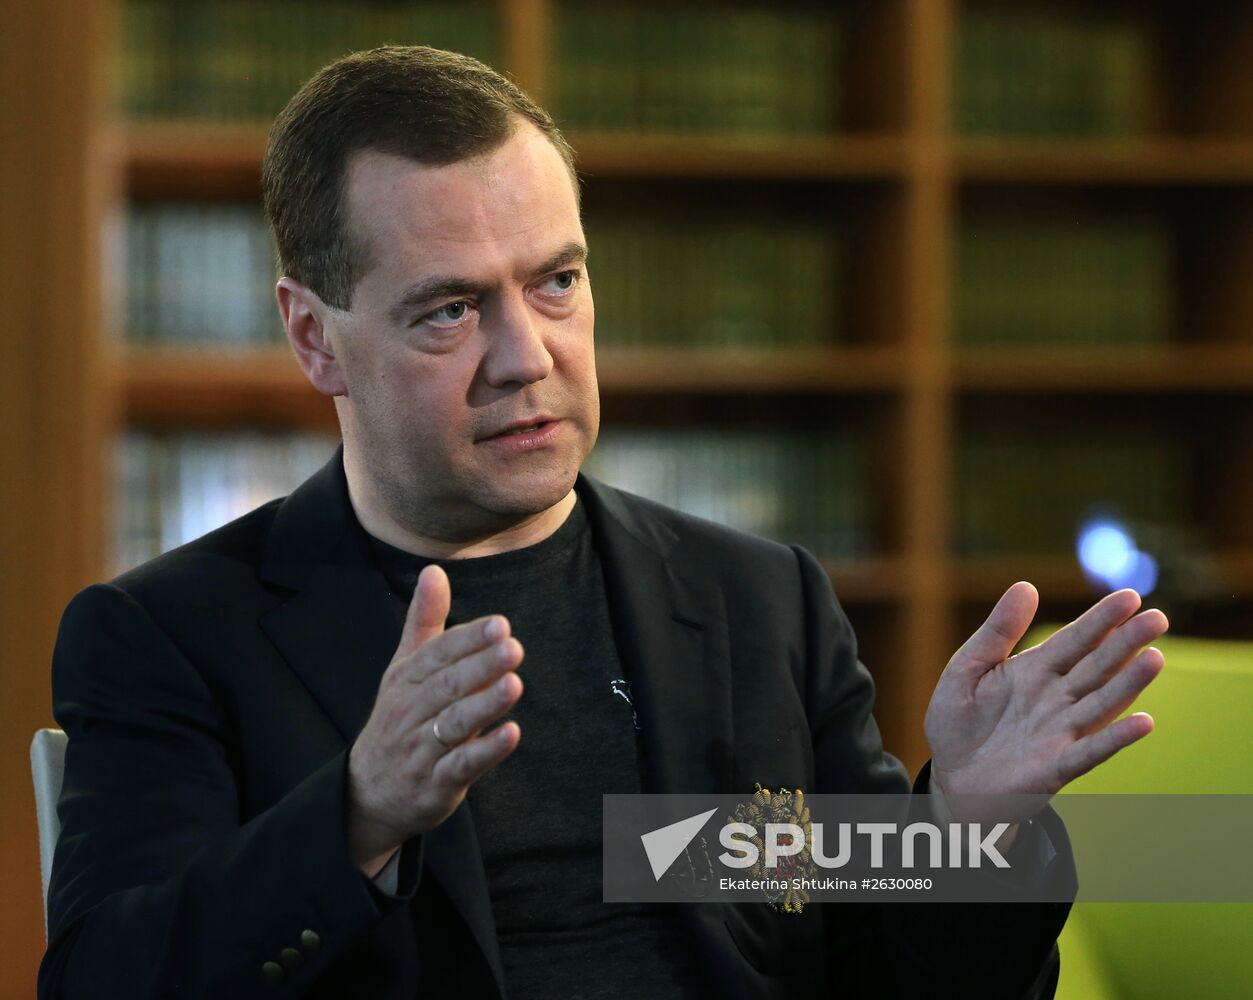 Prime Minister Dmitry Medvedev speaks with Sergei Brilev on Vesti v Subbotu on Rossiya TV network